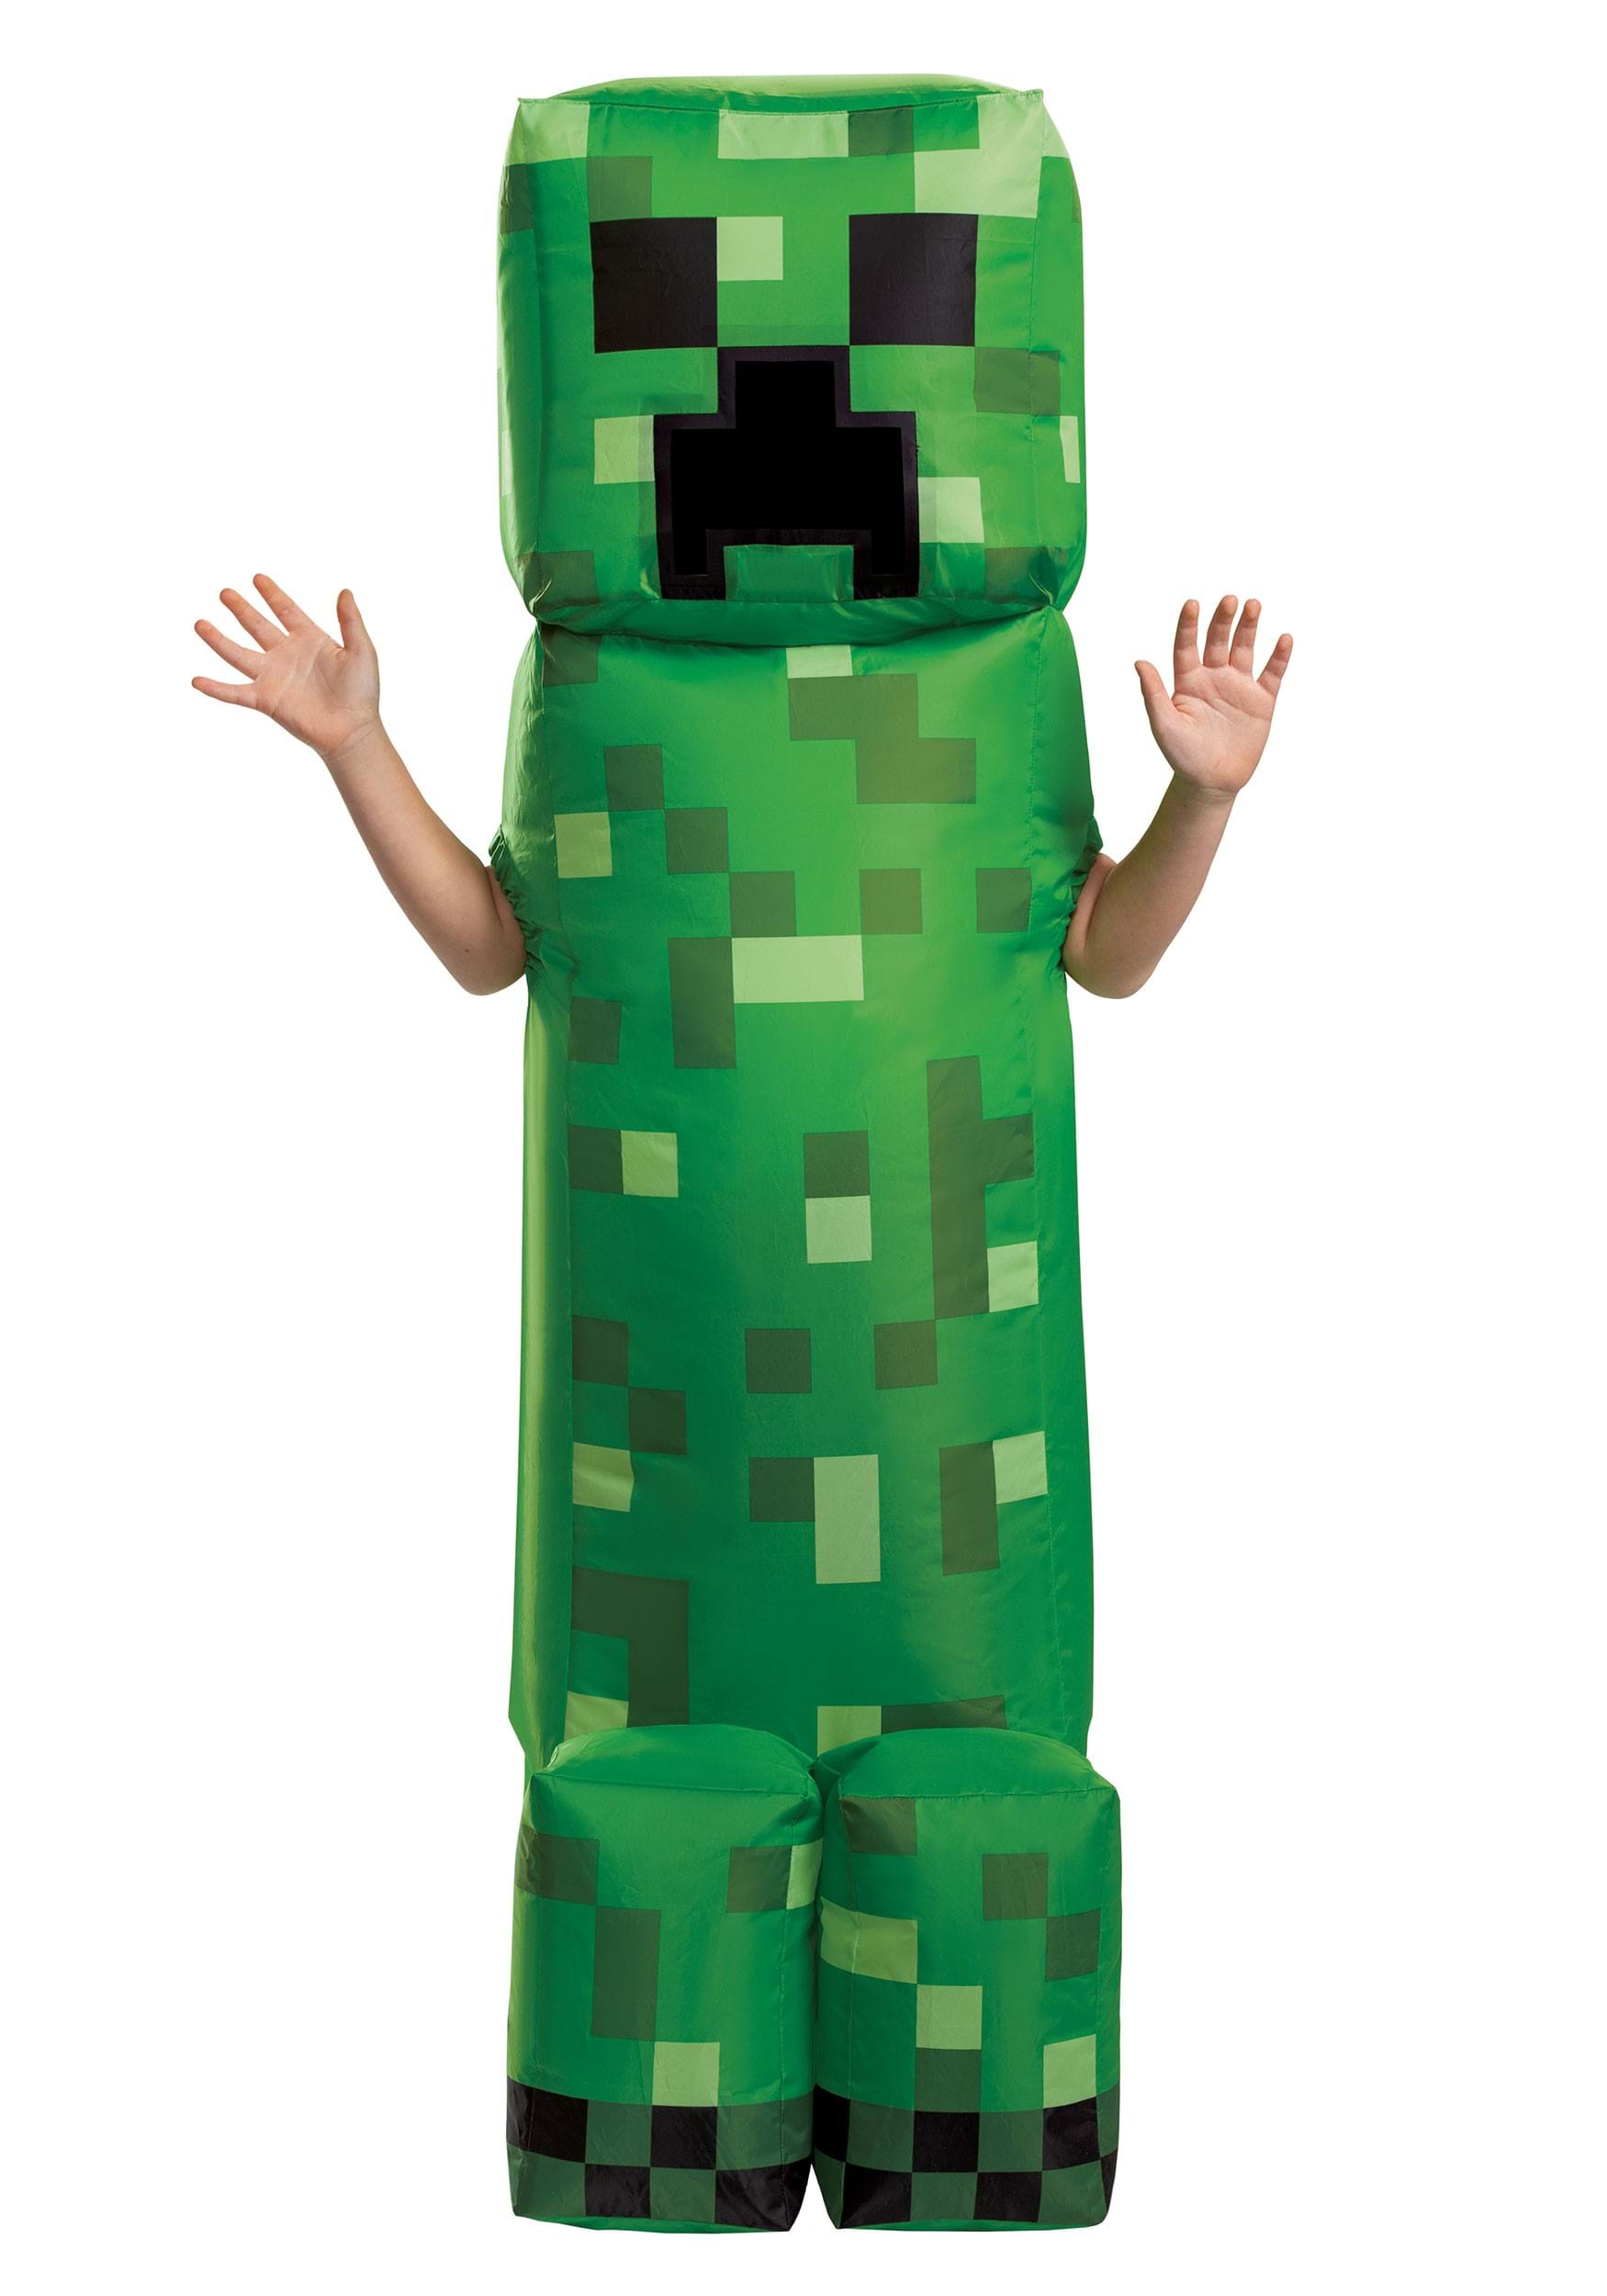 Kid’s Inflatable Minecraft Creeper Costume